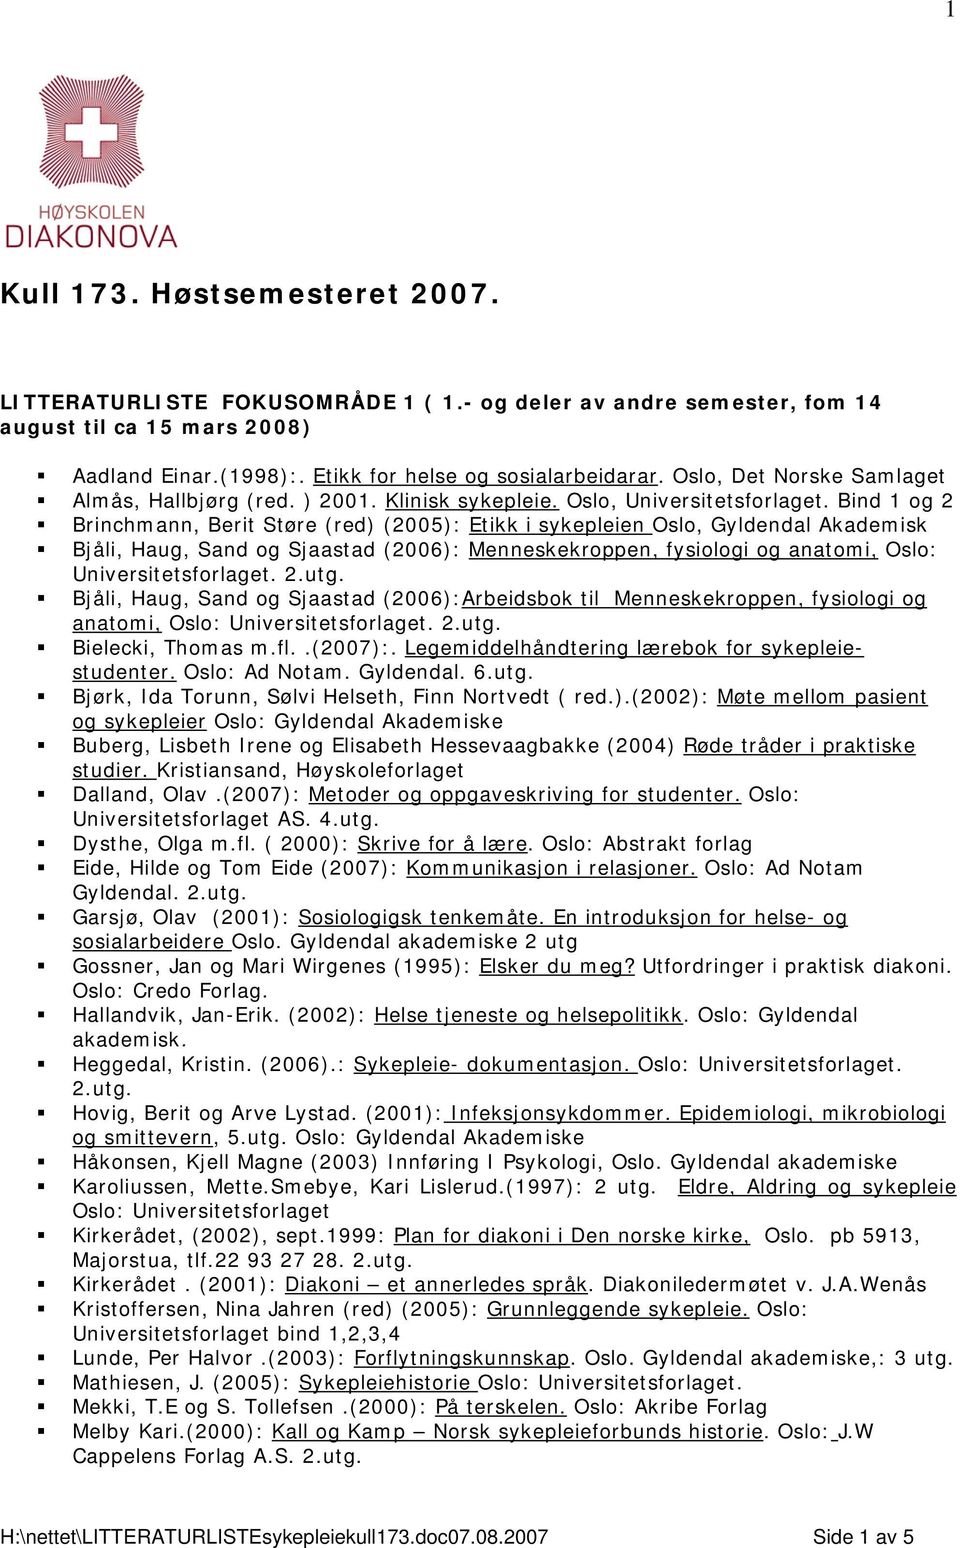 Bind 1 og 2 Brinchmann, Berit Støre (red) (2005): Etikk i sykepleien Oslo, Gyldendal Akademisk Bjåli, Haug, Sand og Sjaastad (2006): Menneskekroppen, fysiologi og anatomi, Oslo:. 2.utg.